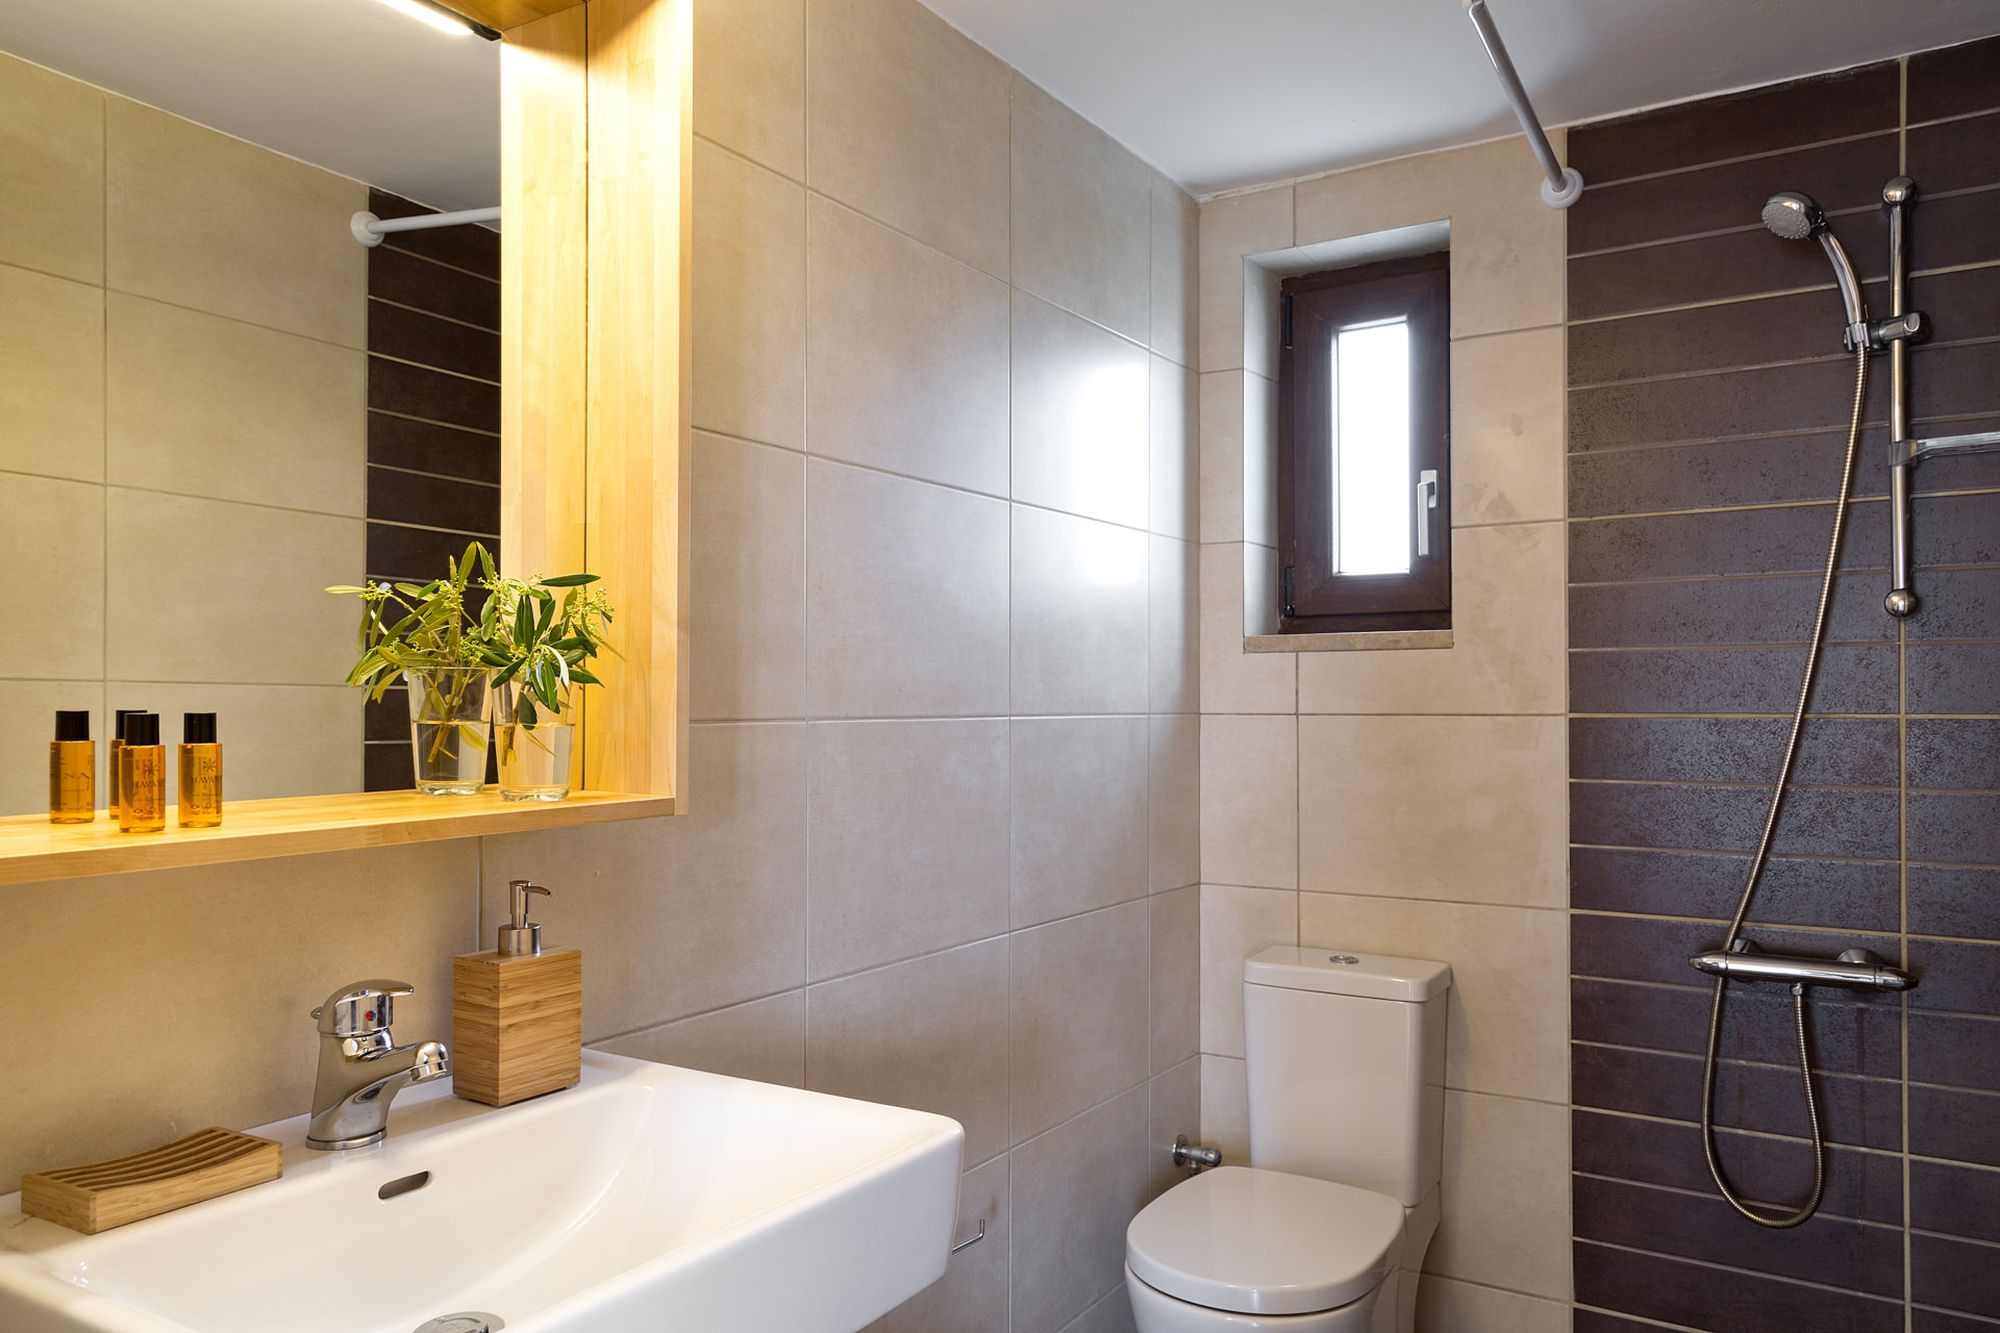 Μοντέρνο μπάνιο με ντουζιέρα, ένα μεγάλο λευκό νιπτήρα, ένα ξύλινο καθρέφτη και πλακάκια σε μπεζ και γκρι χρώματα.